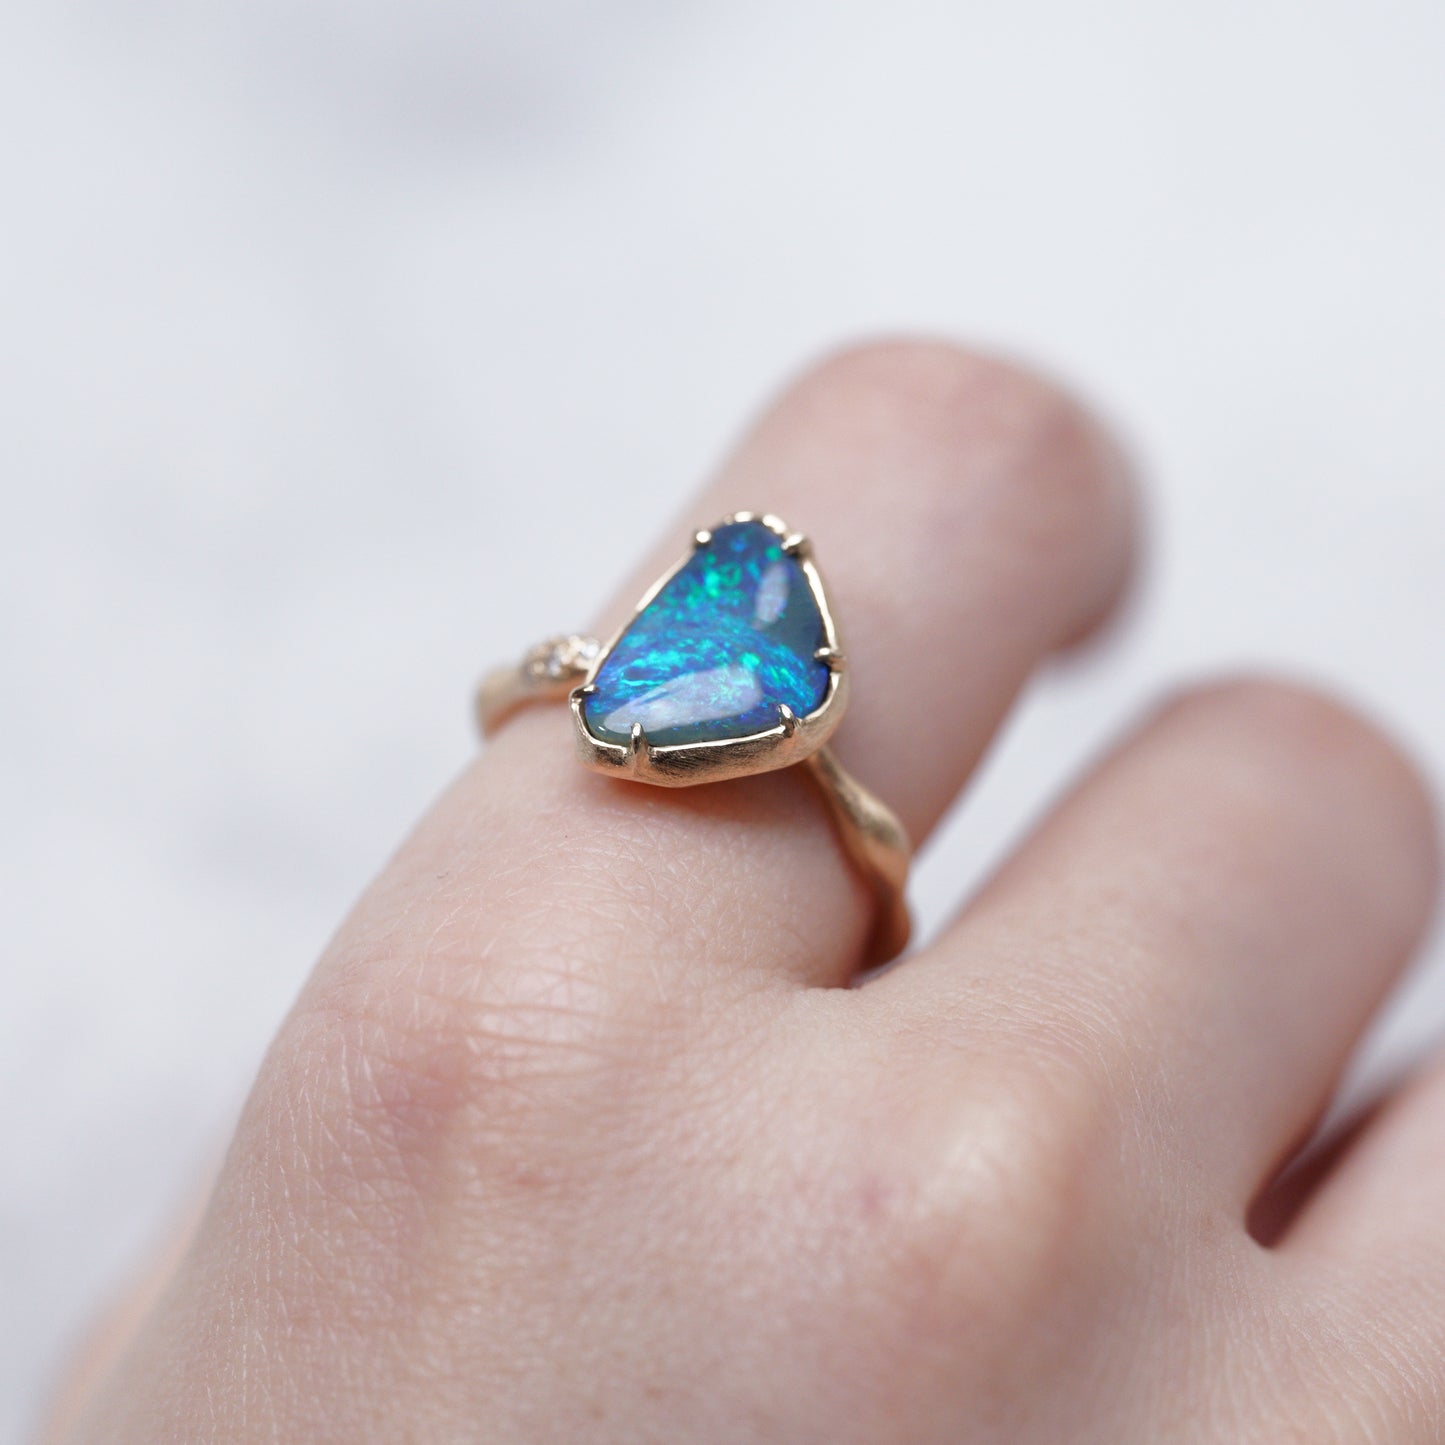 723 Ring / Boulder Opal